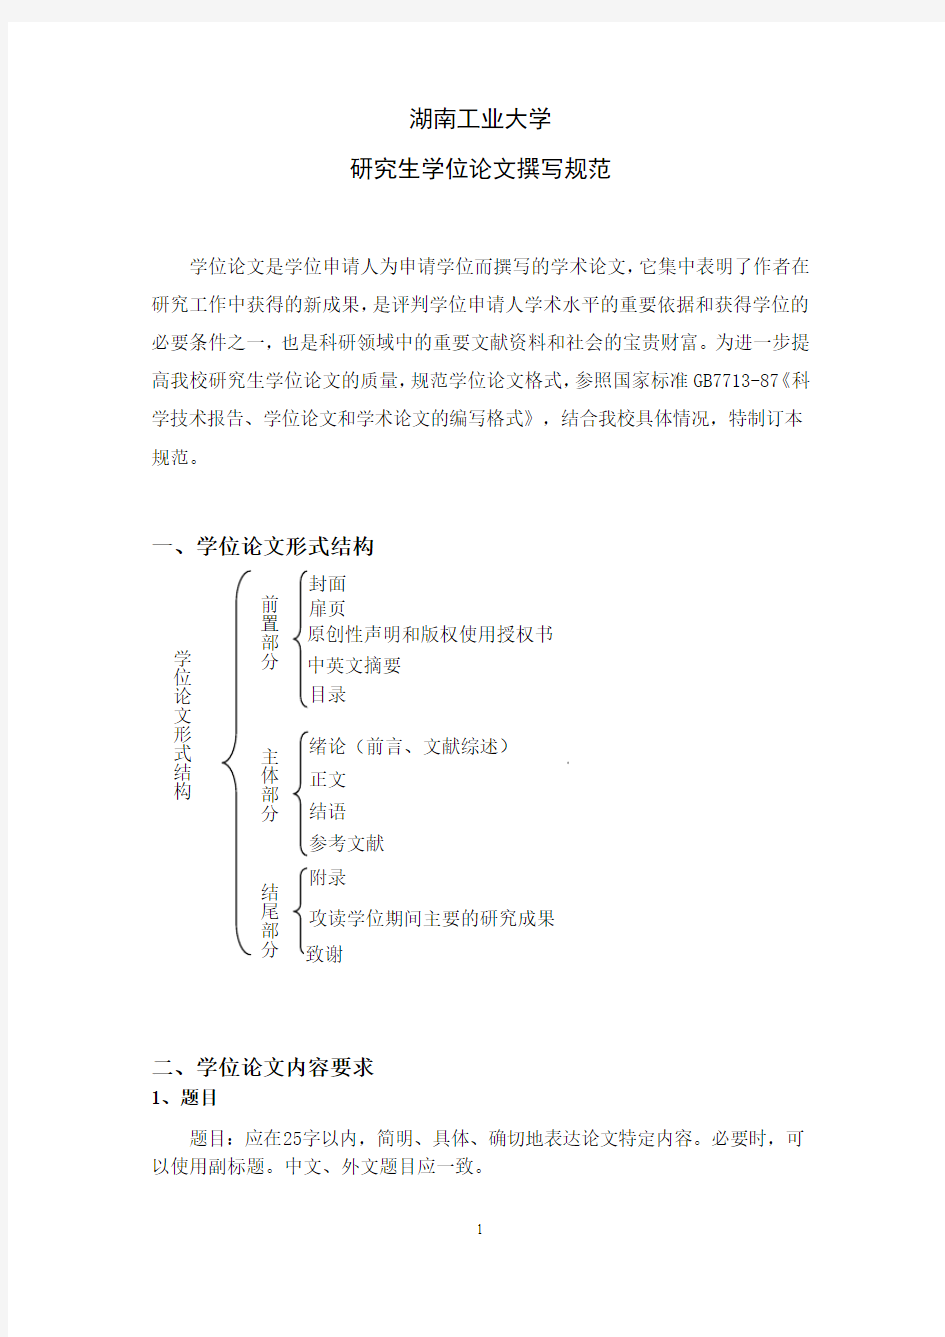 28湖南工业大学研究生学位论文撰写规范